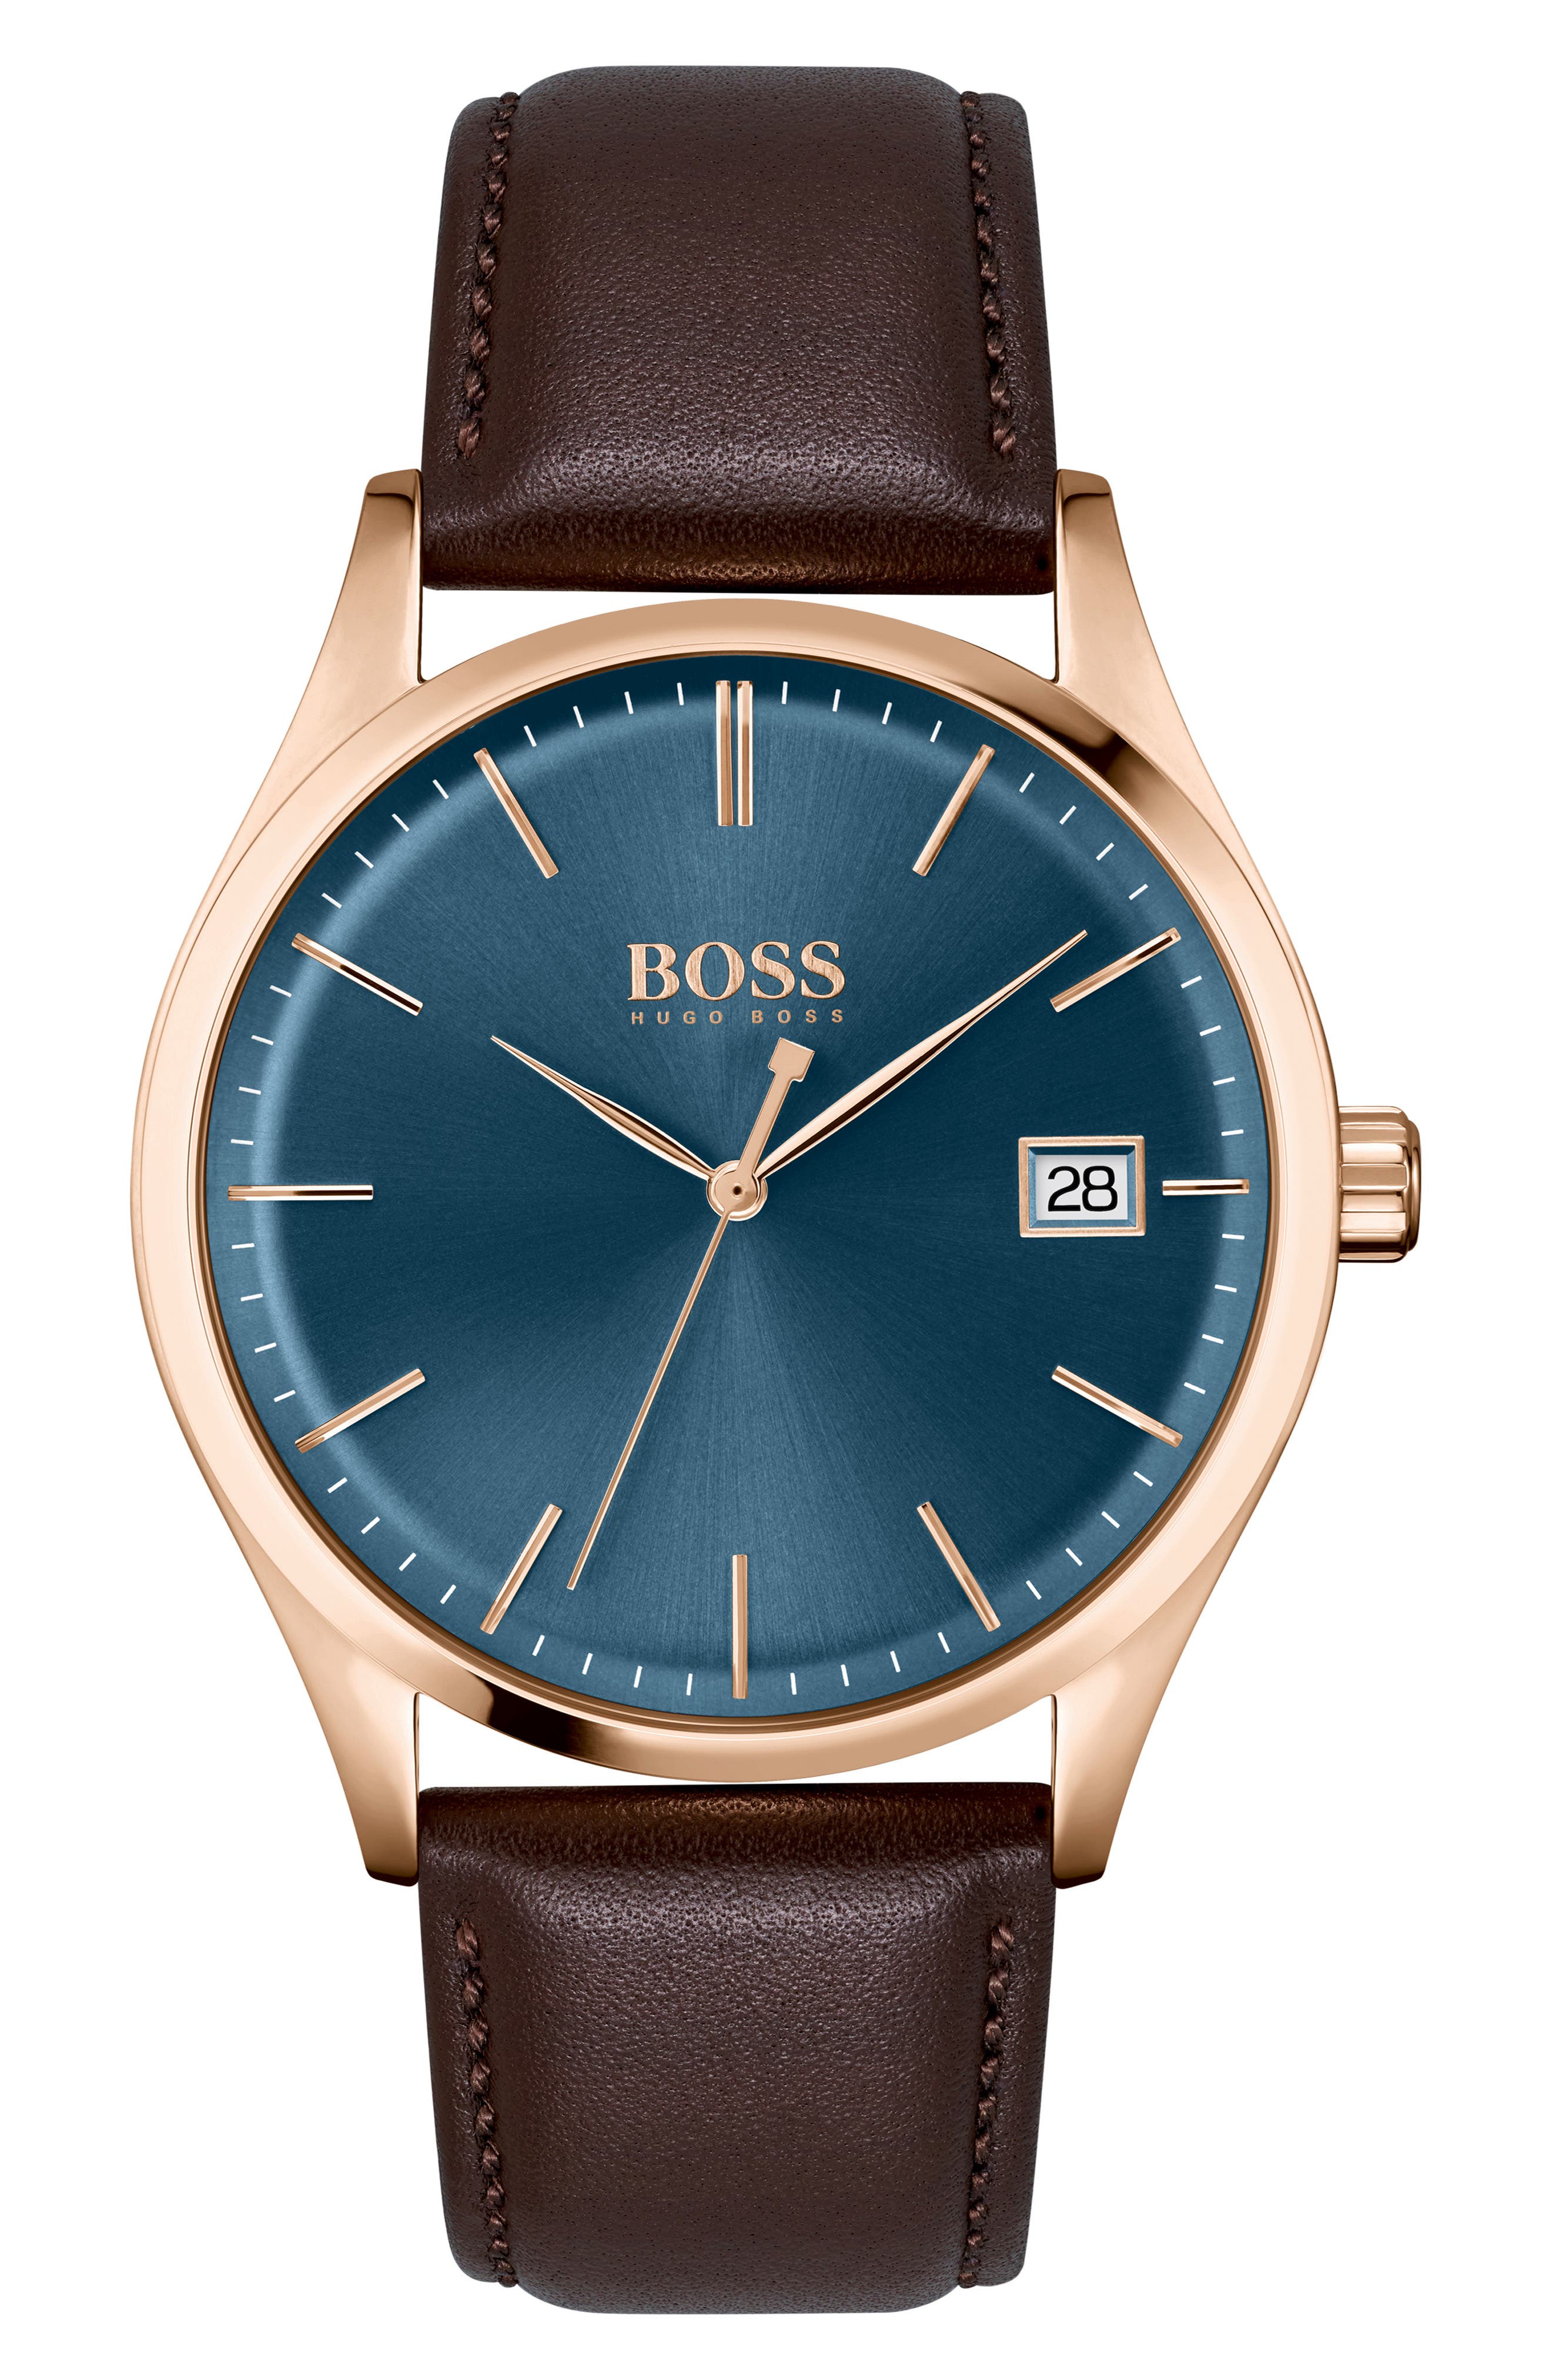 boss orange watch sale